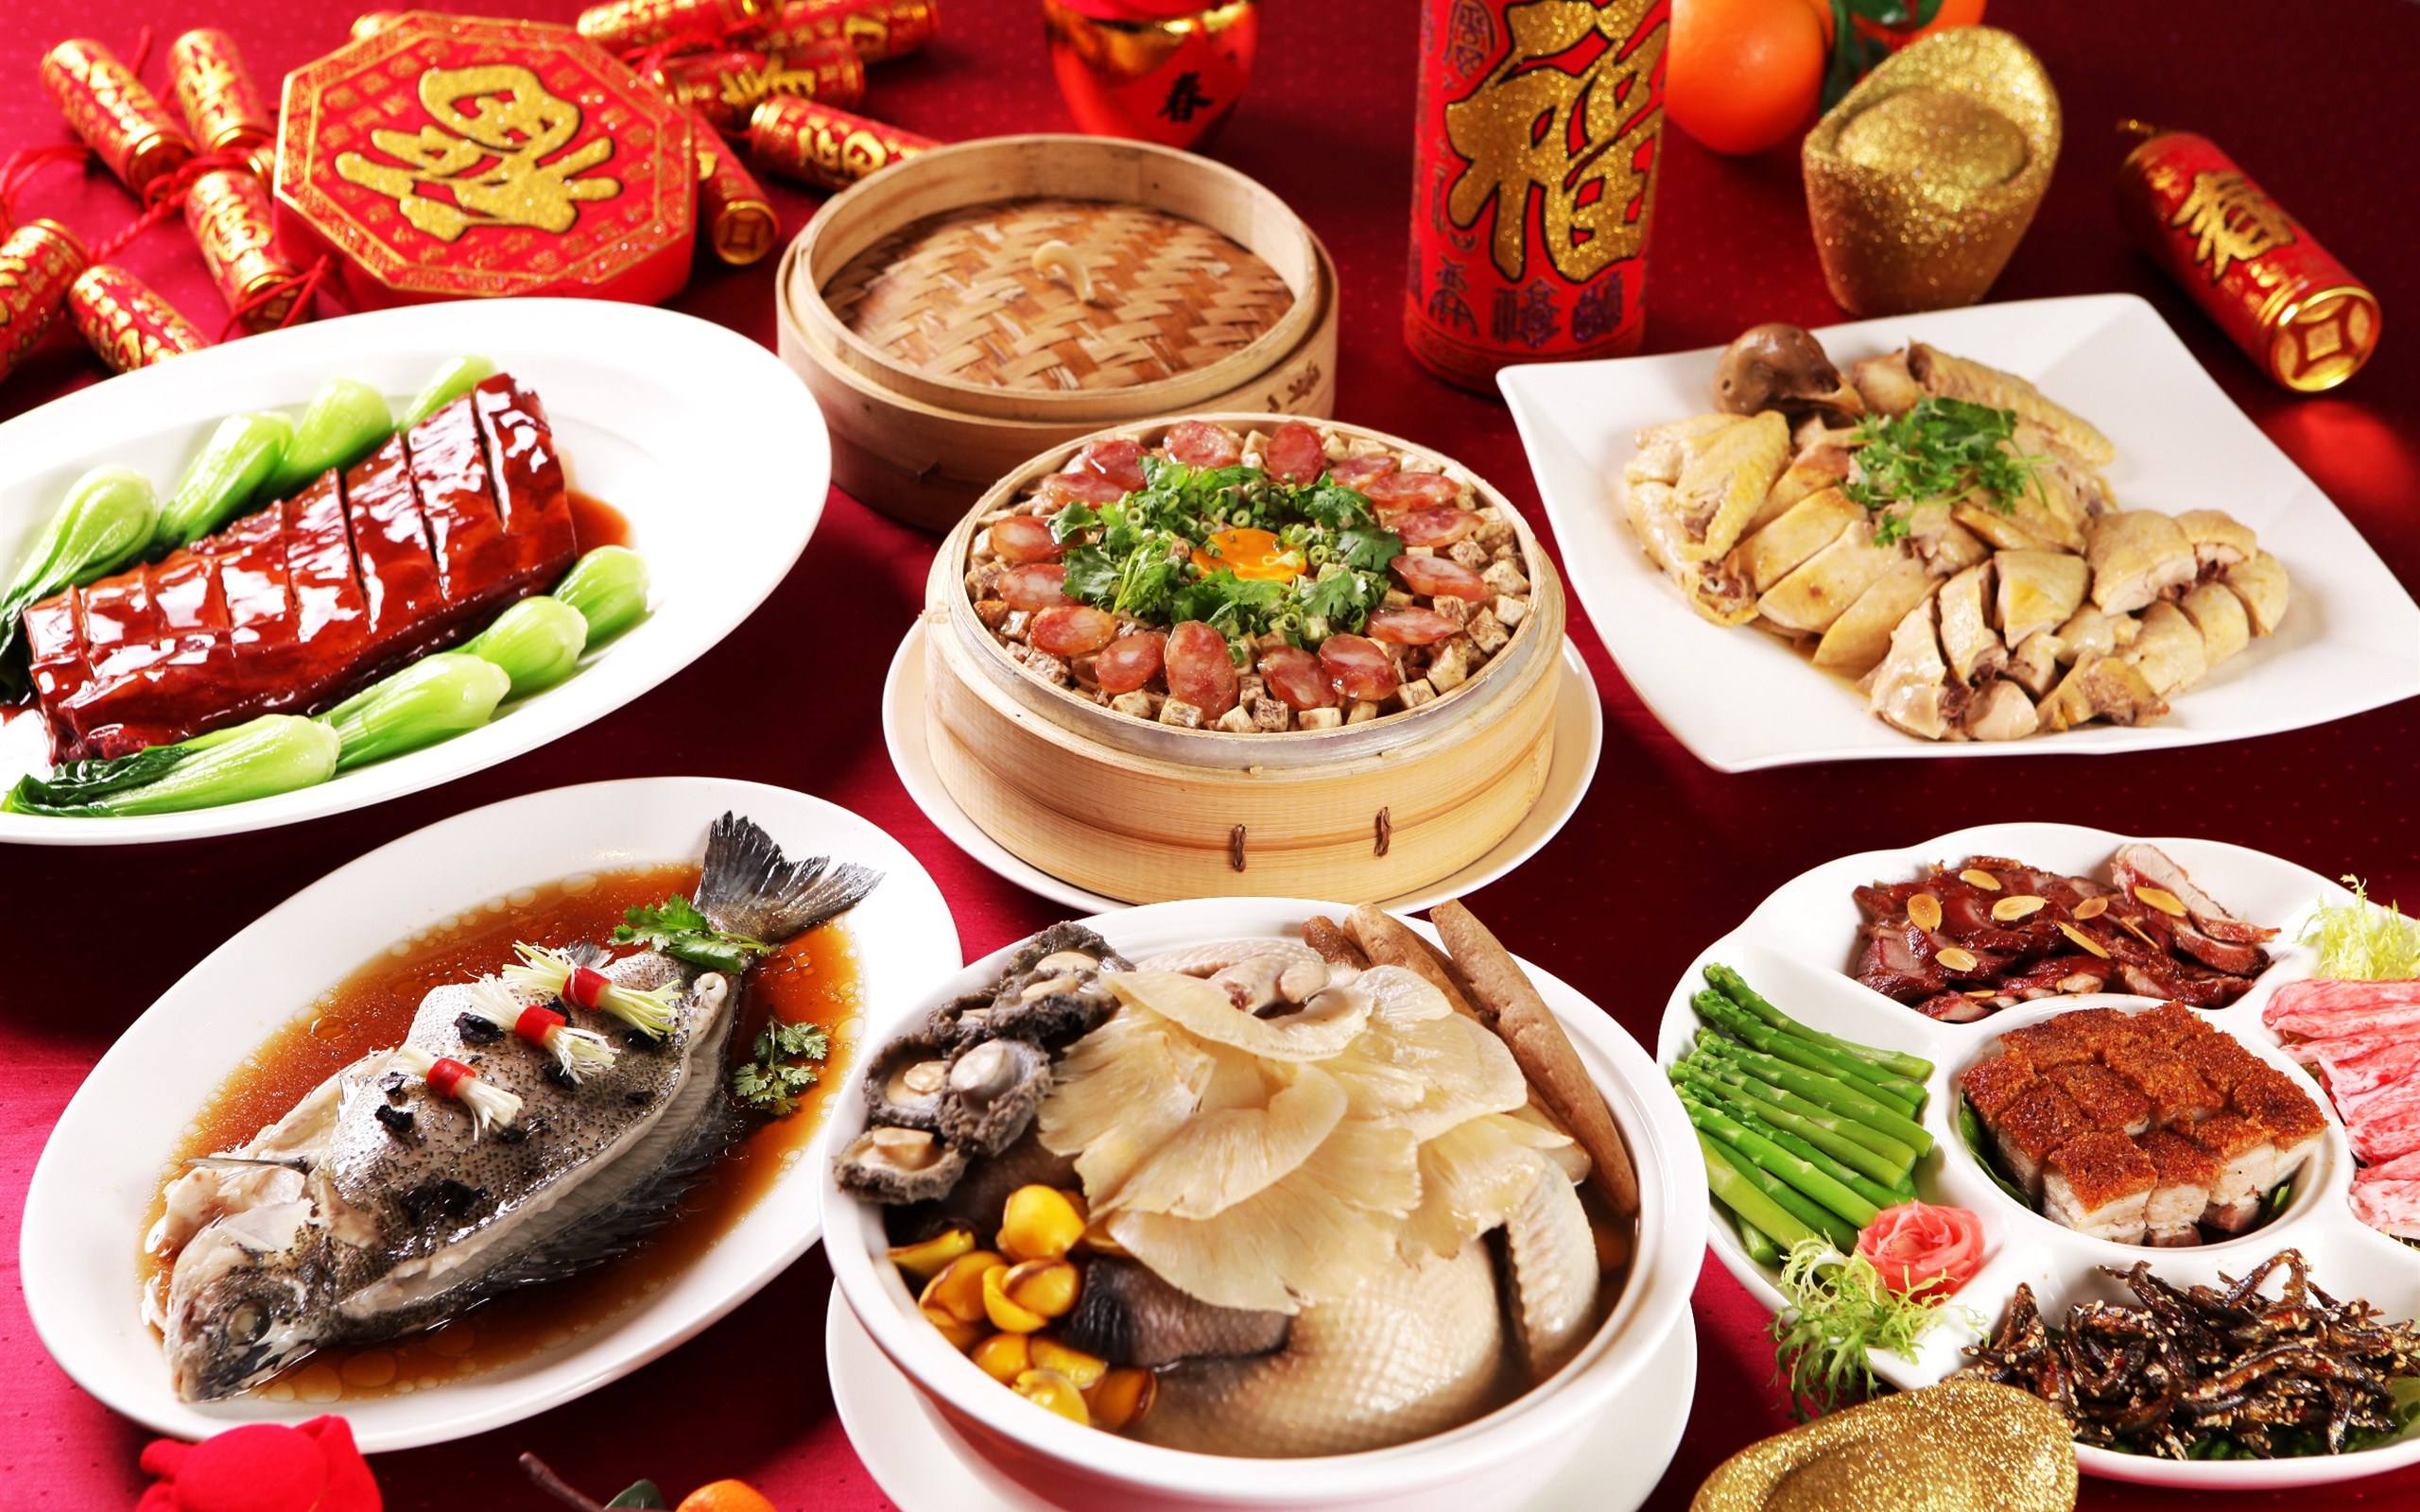 中餐美食图片大全高清_中国家常菜美食图片_微信公众号文章